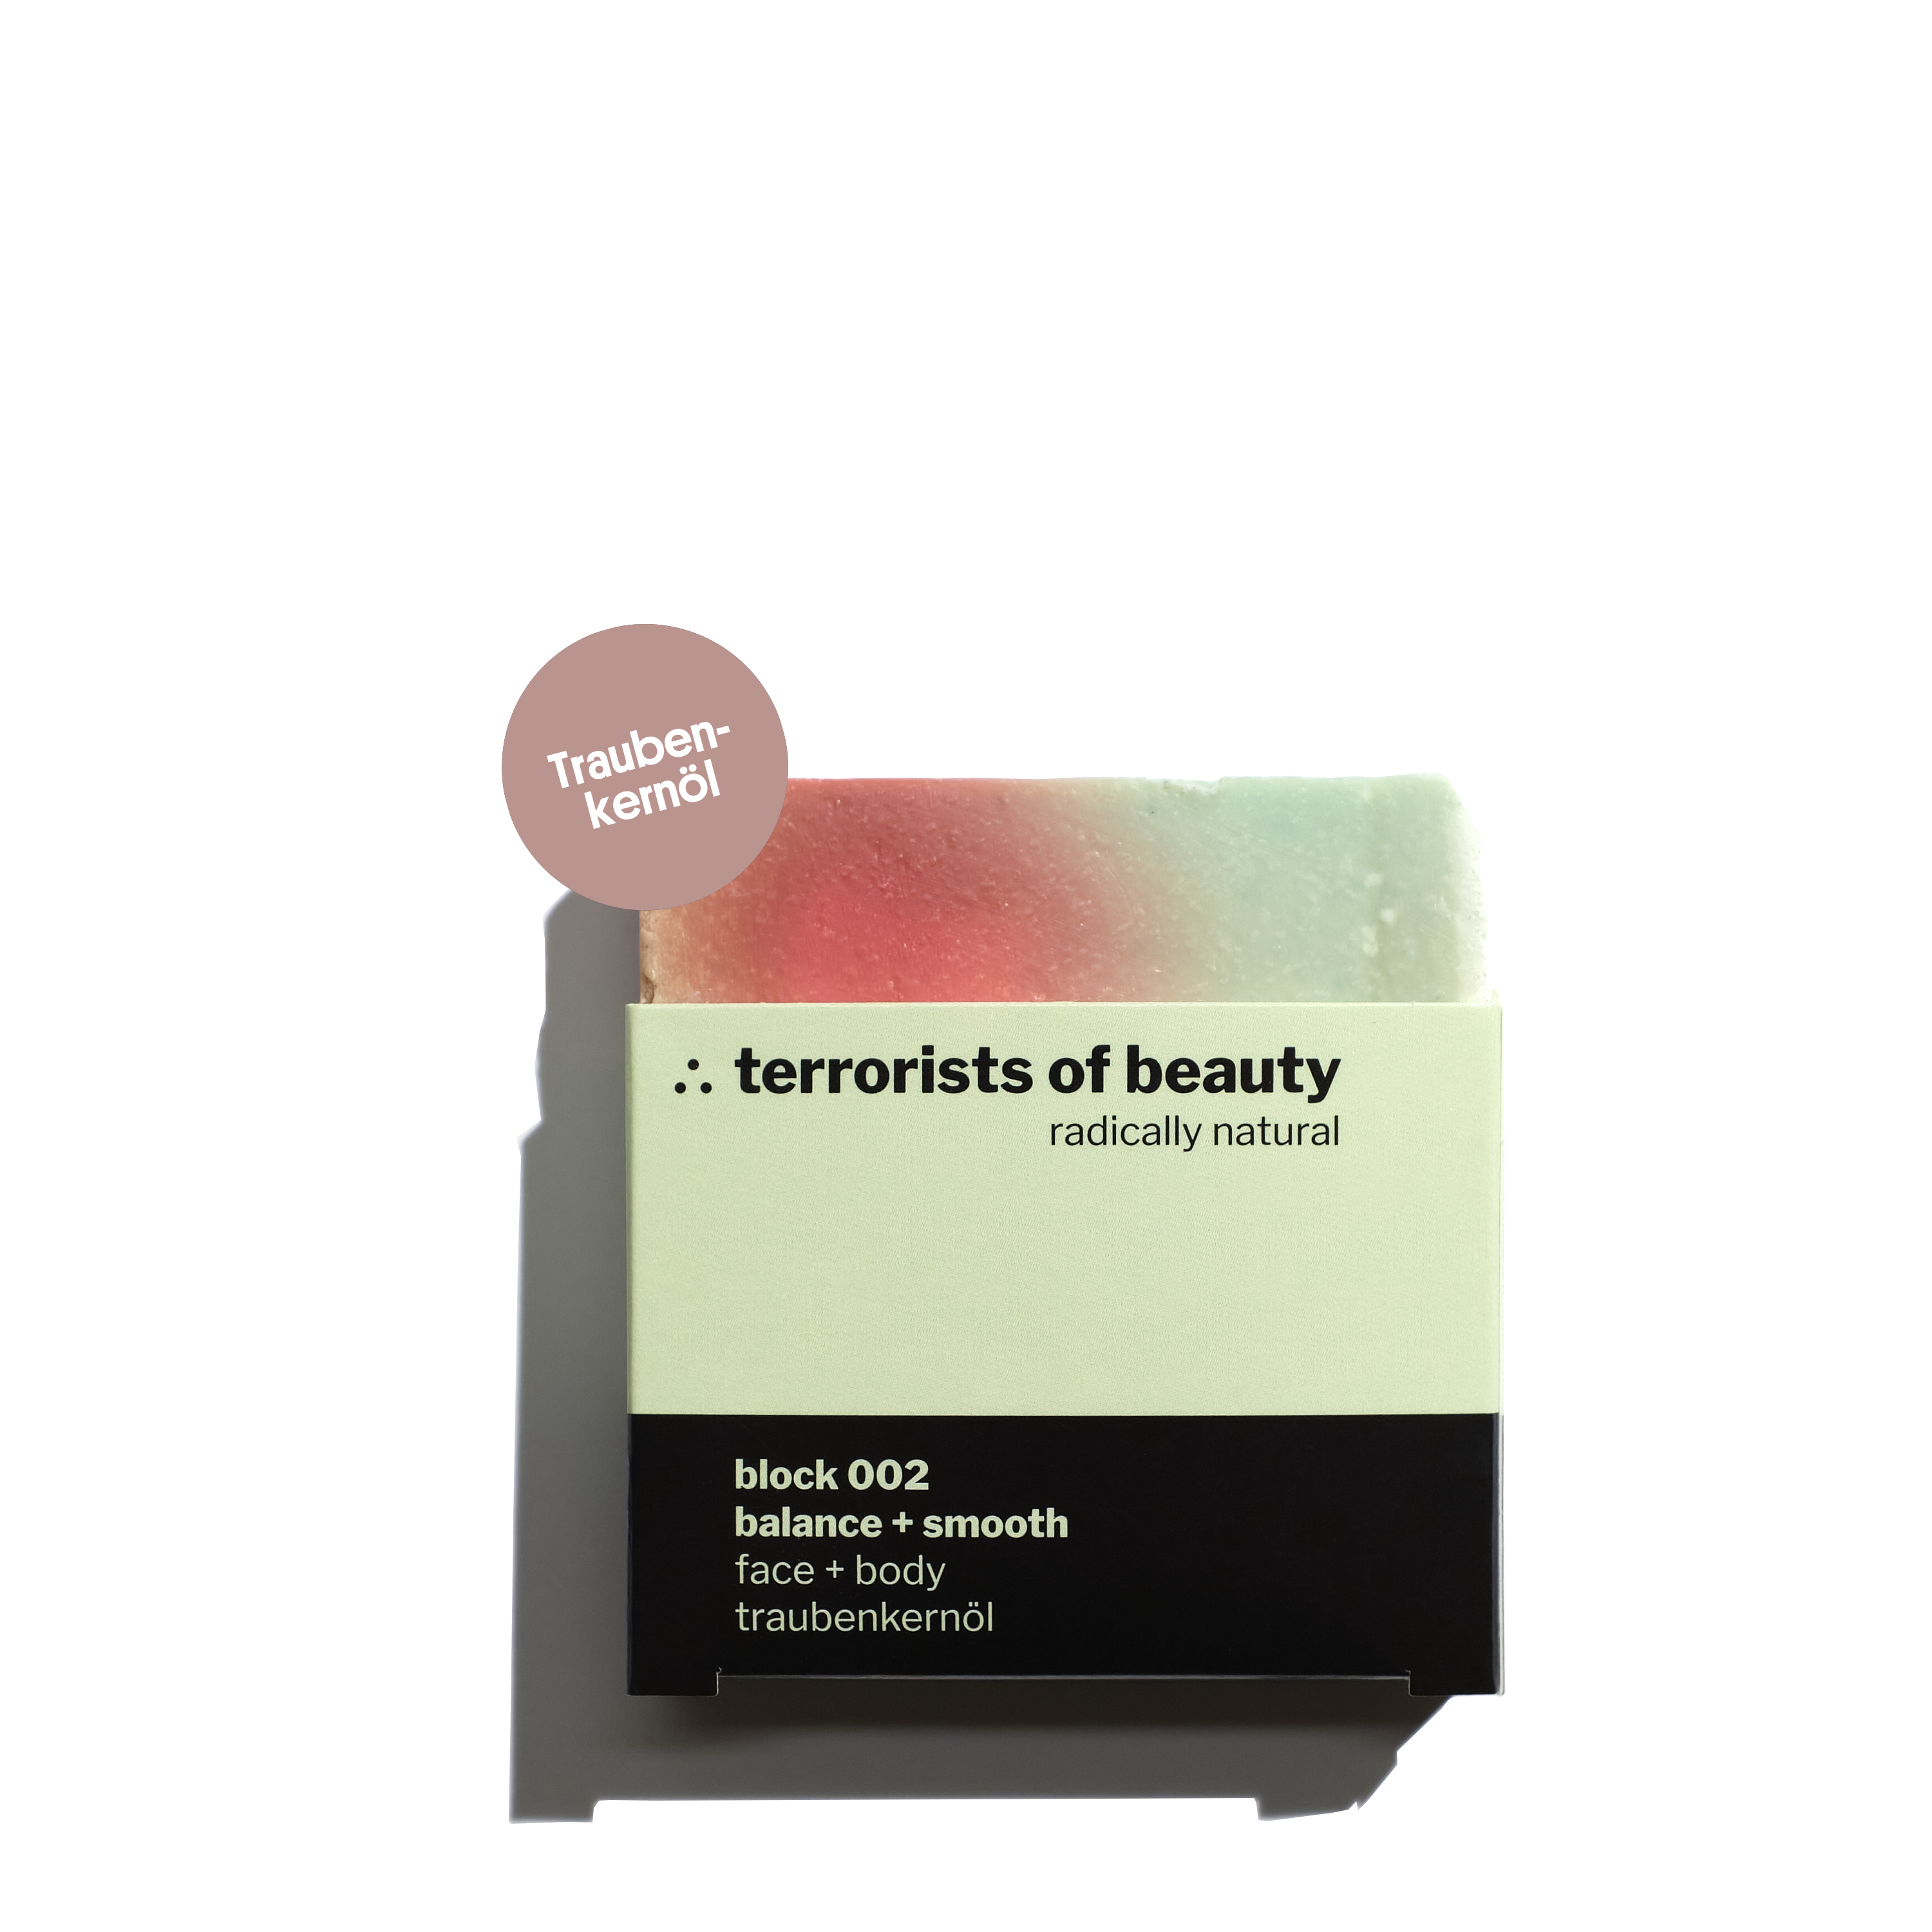 terrorists of beauty Special: 5 Blocks -15% 5 mal 100gr + gratis Seife